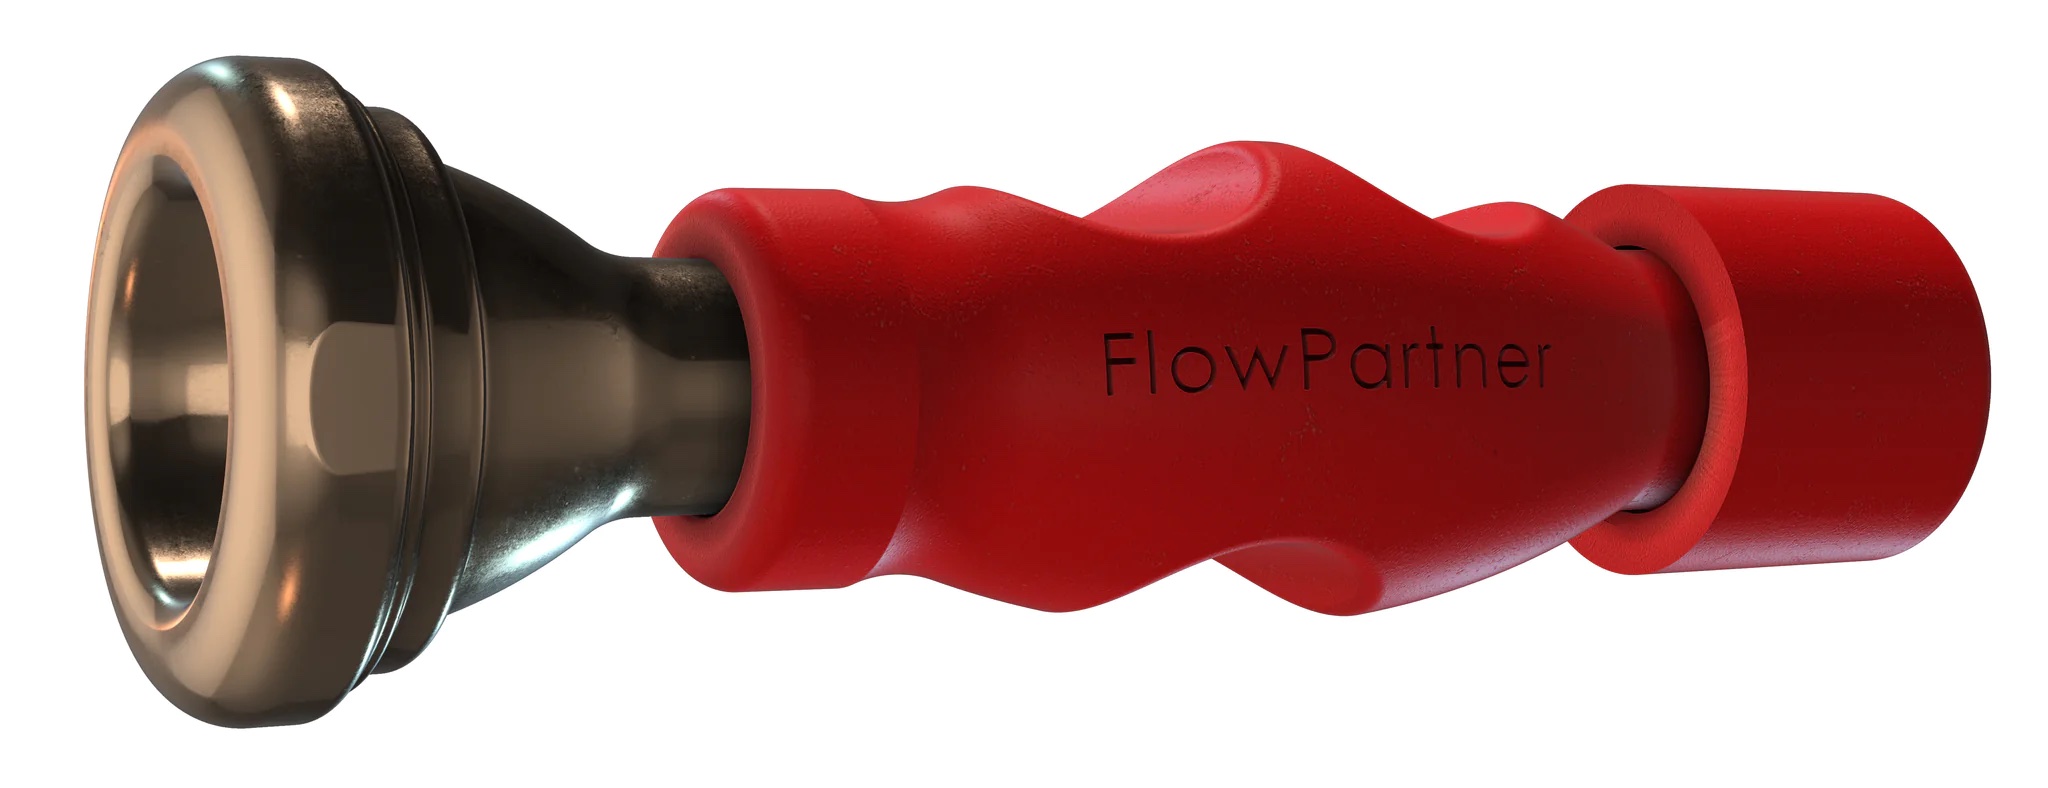 FlowPartner (L) - for tuba euphonium trombone (large shank) - RED